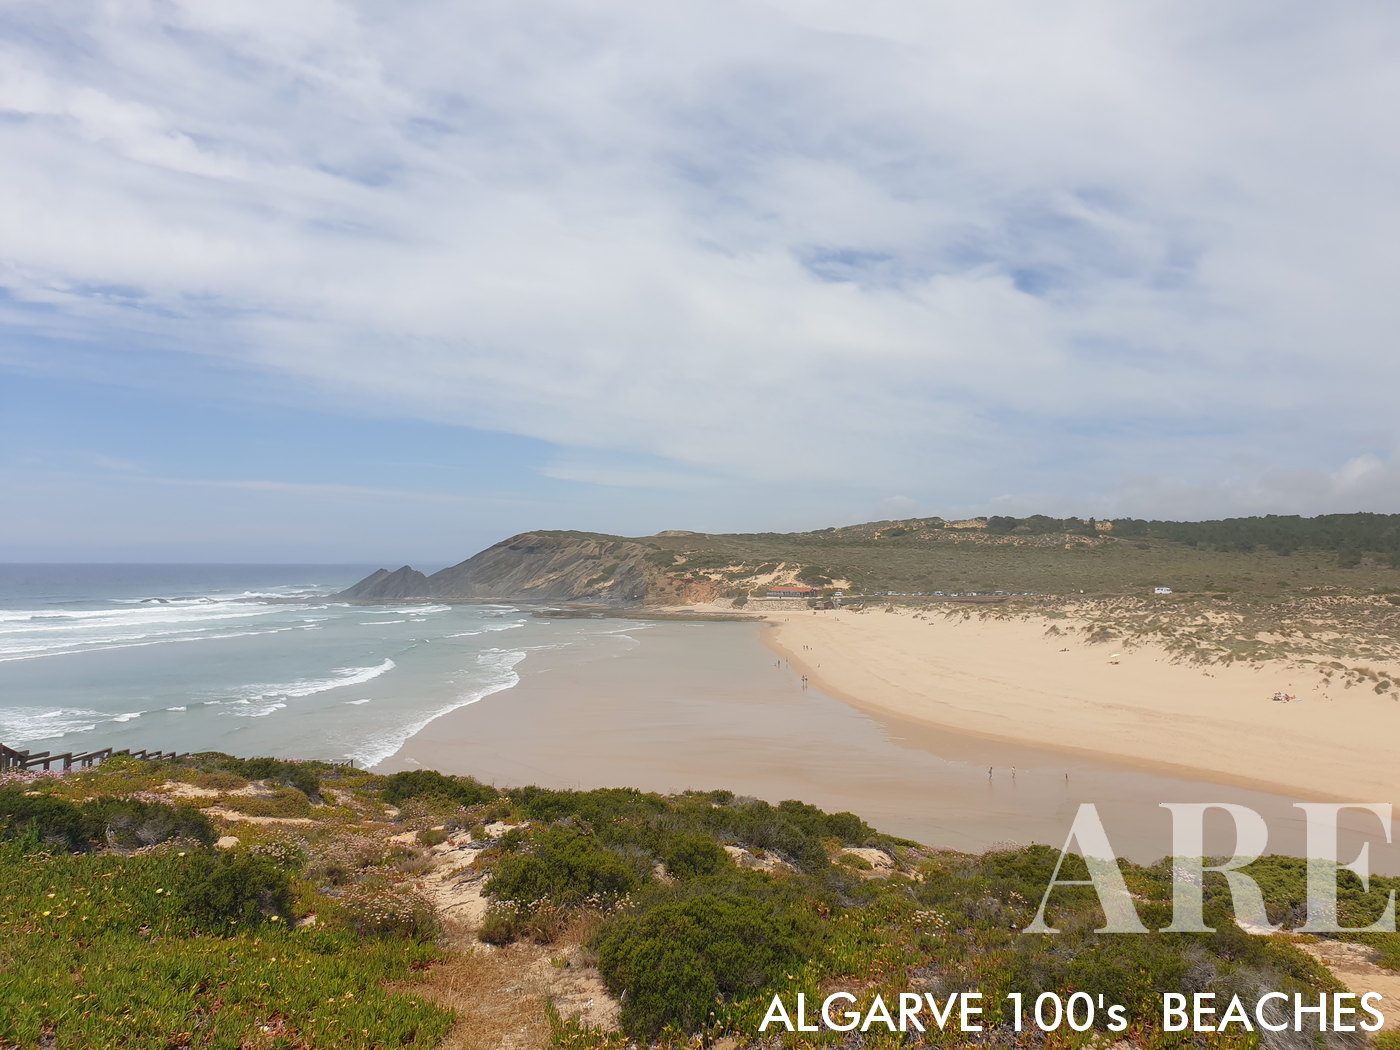 Desde lo alto del acantilado, la playa de Amoreira revela un impresionante paisaje de belleza natural. La vista está marcada por las dunas contra el fondo del océano.